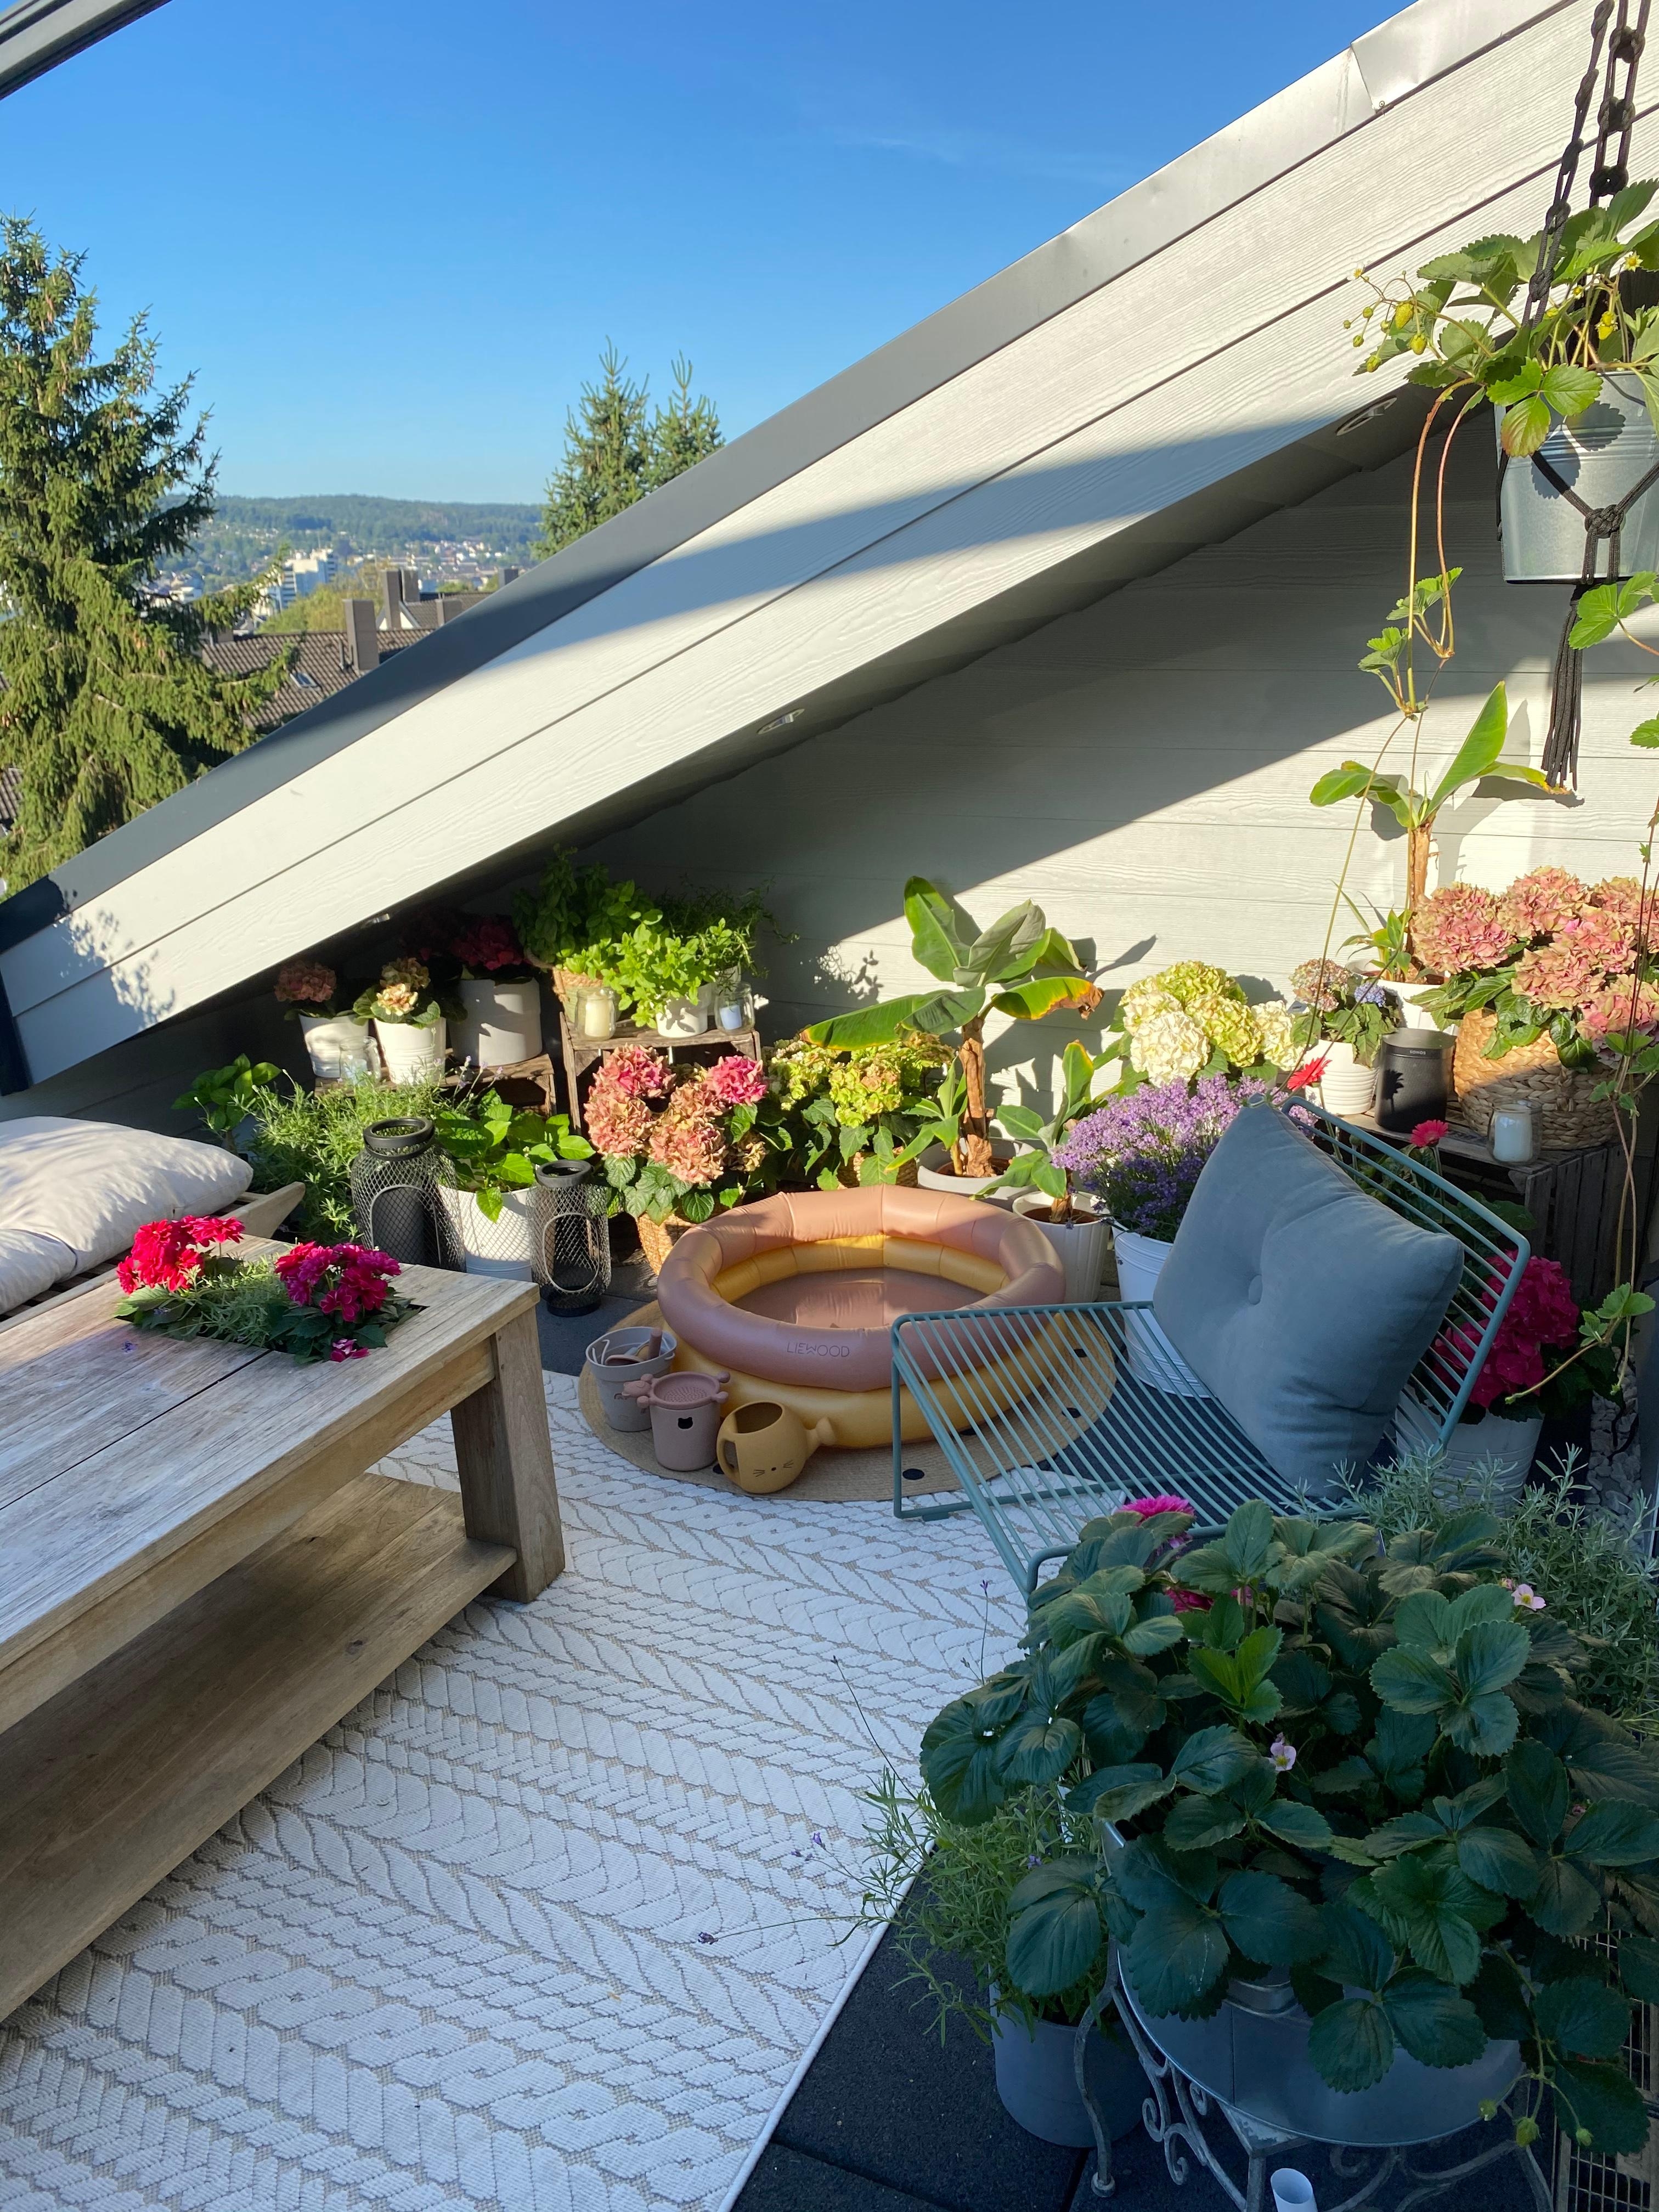 #gartenliebe
Der Garten auf der Dachterrasse 😍